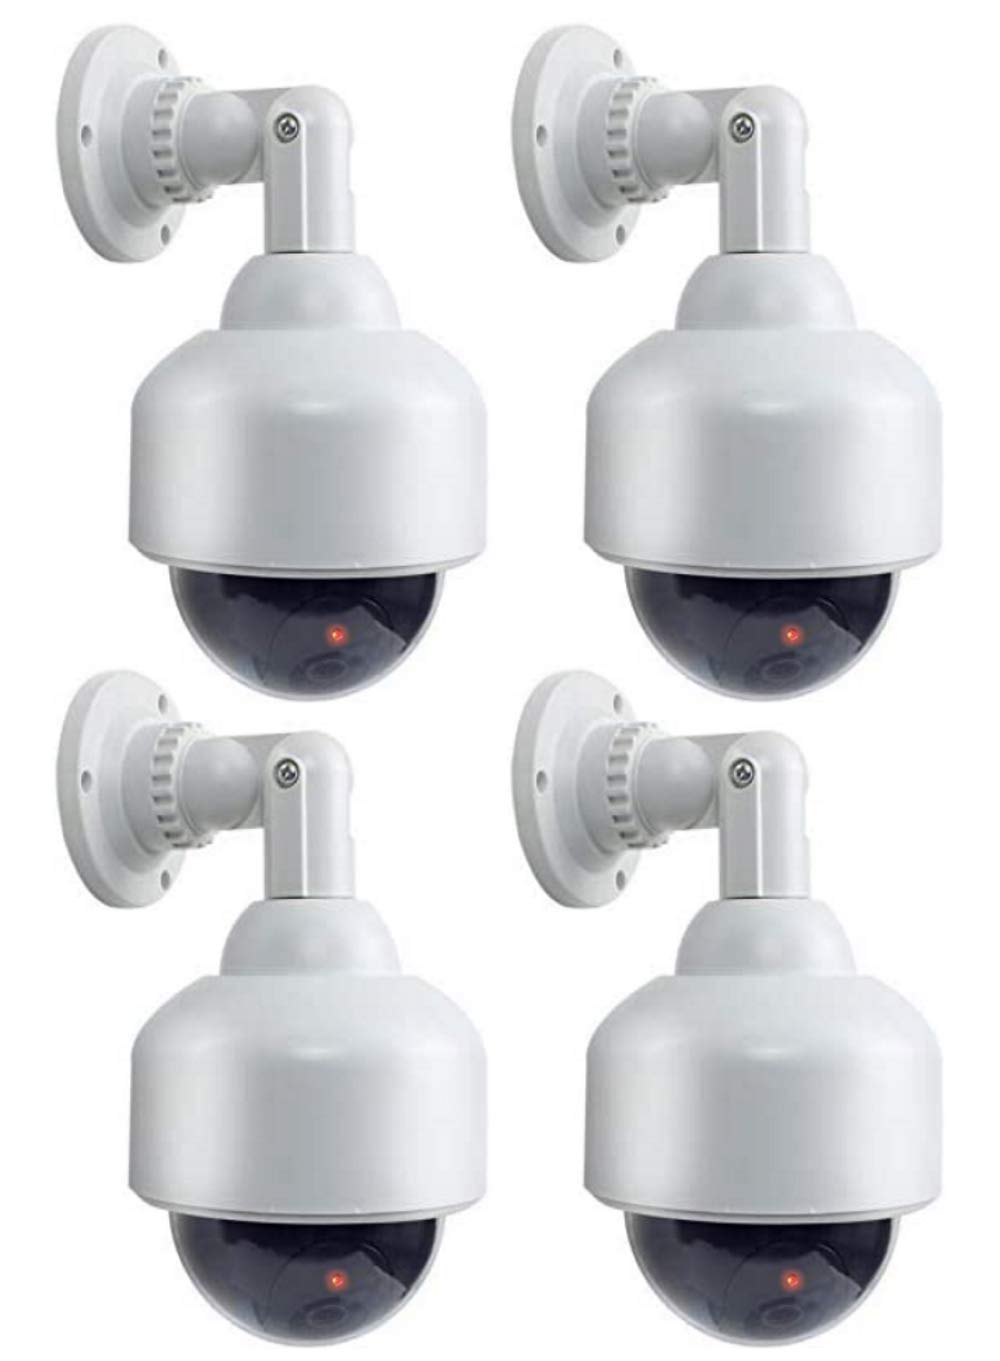 4X Kamera-Attrappe Dummy Dome Überwachungskameras mit Objektiv, Blinkender LED, wasserdicht, Verwendung im Innen- und Außenbereich